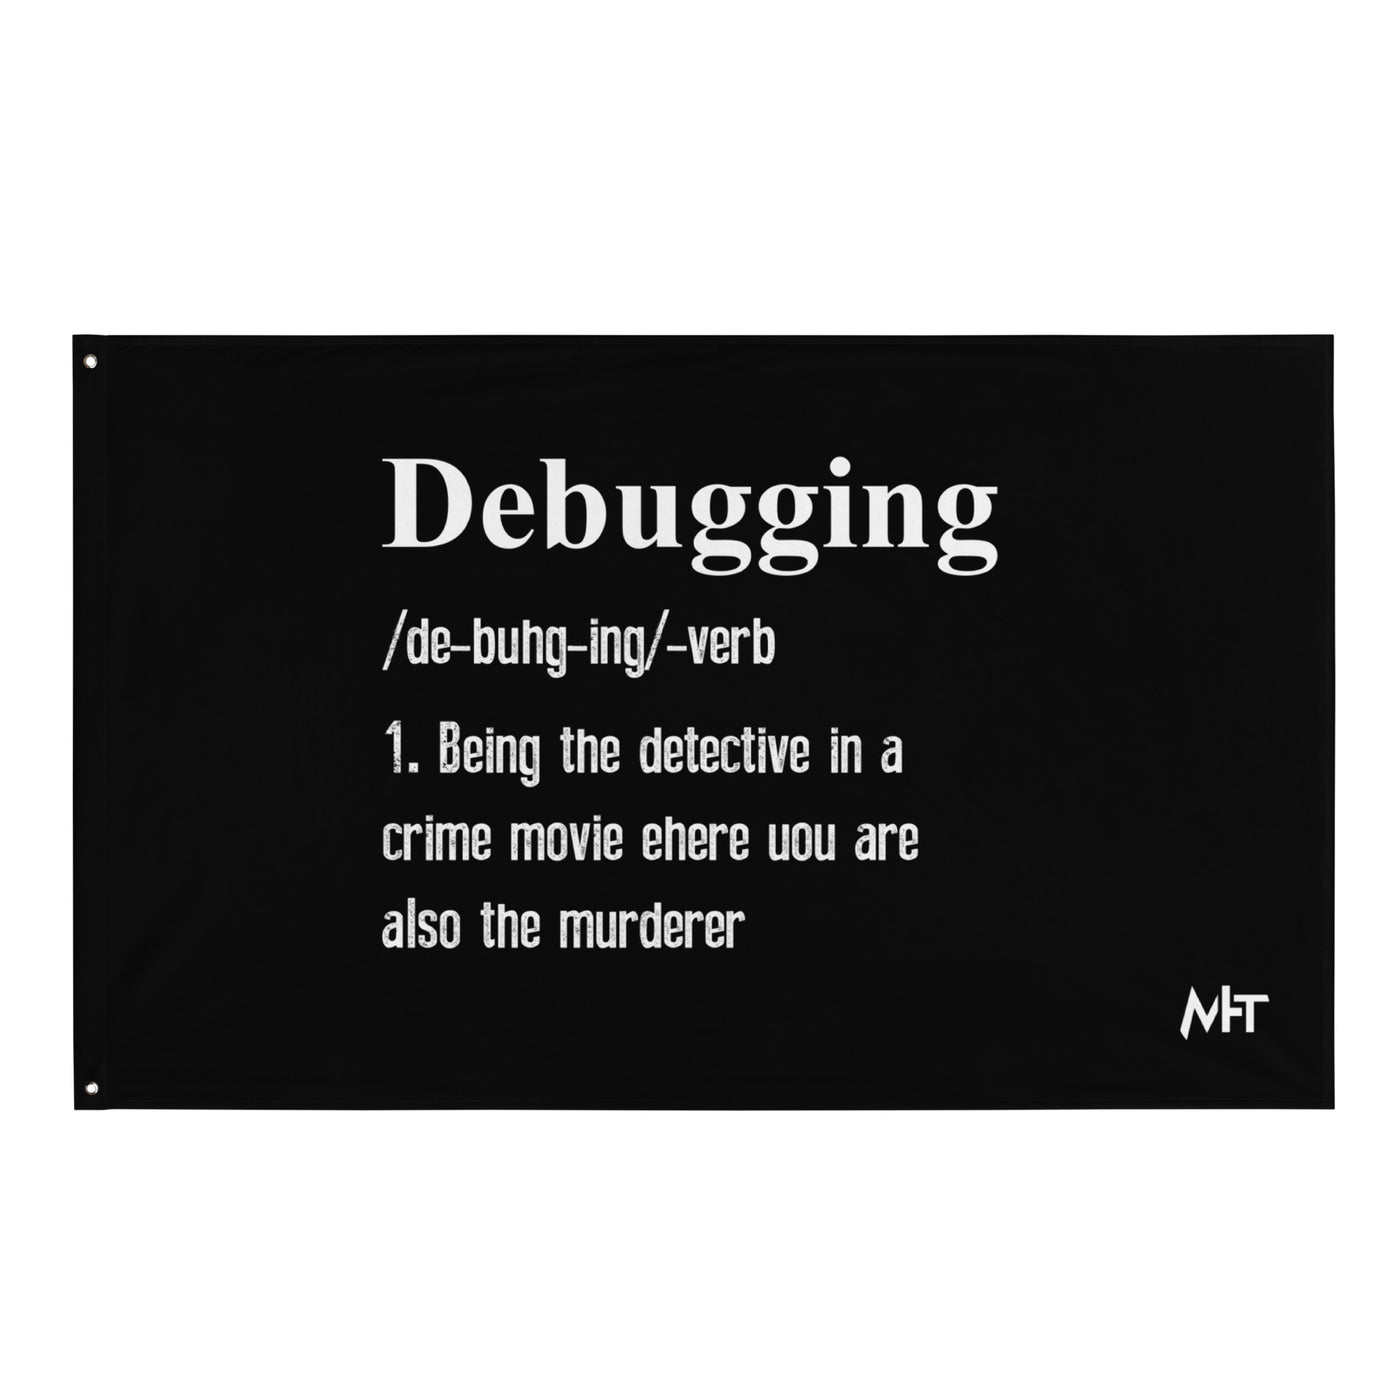 Debugging Definition V1 - Flag